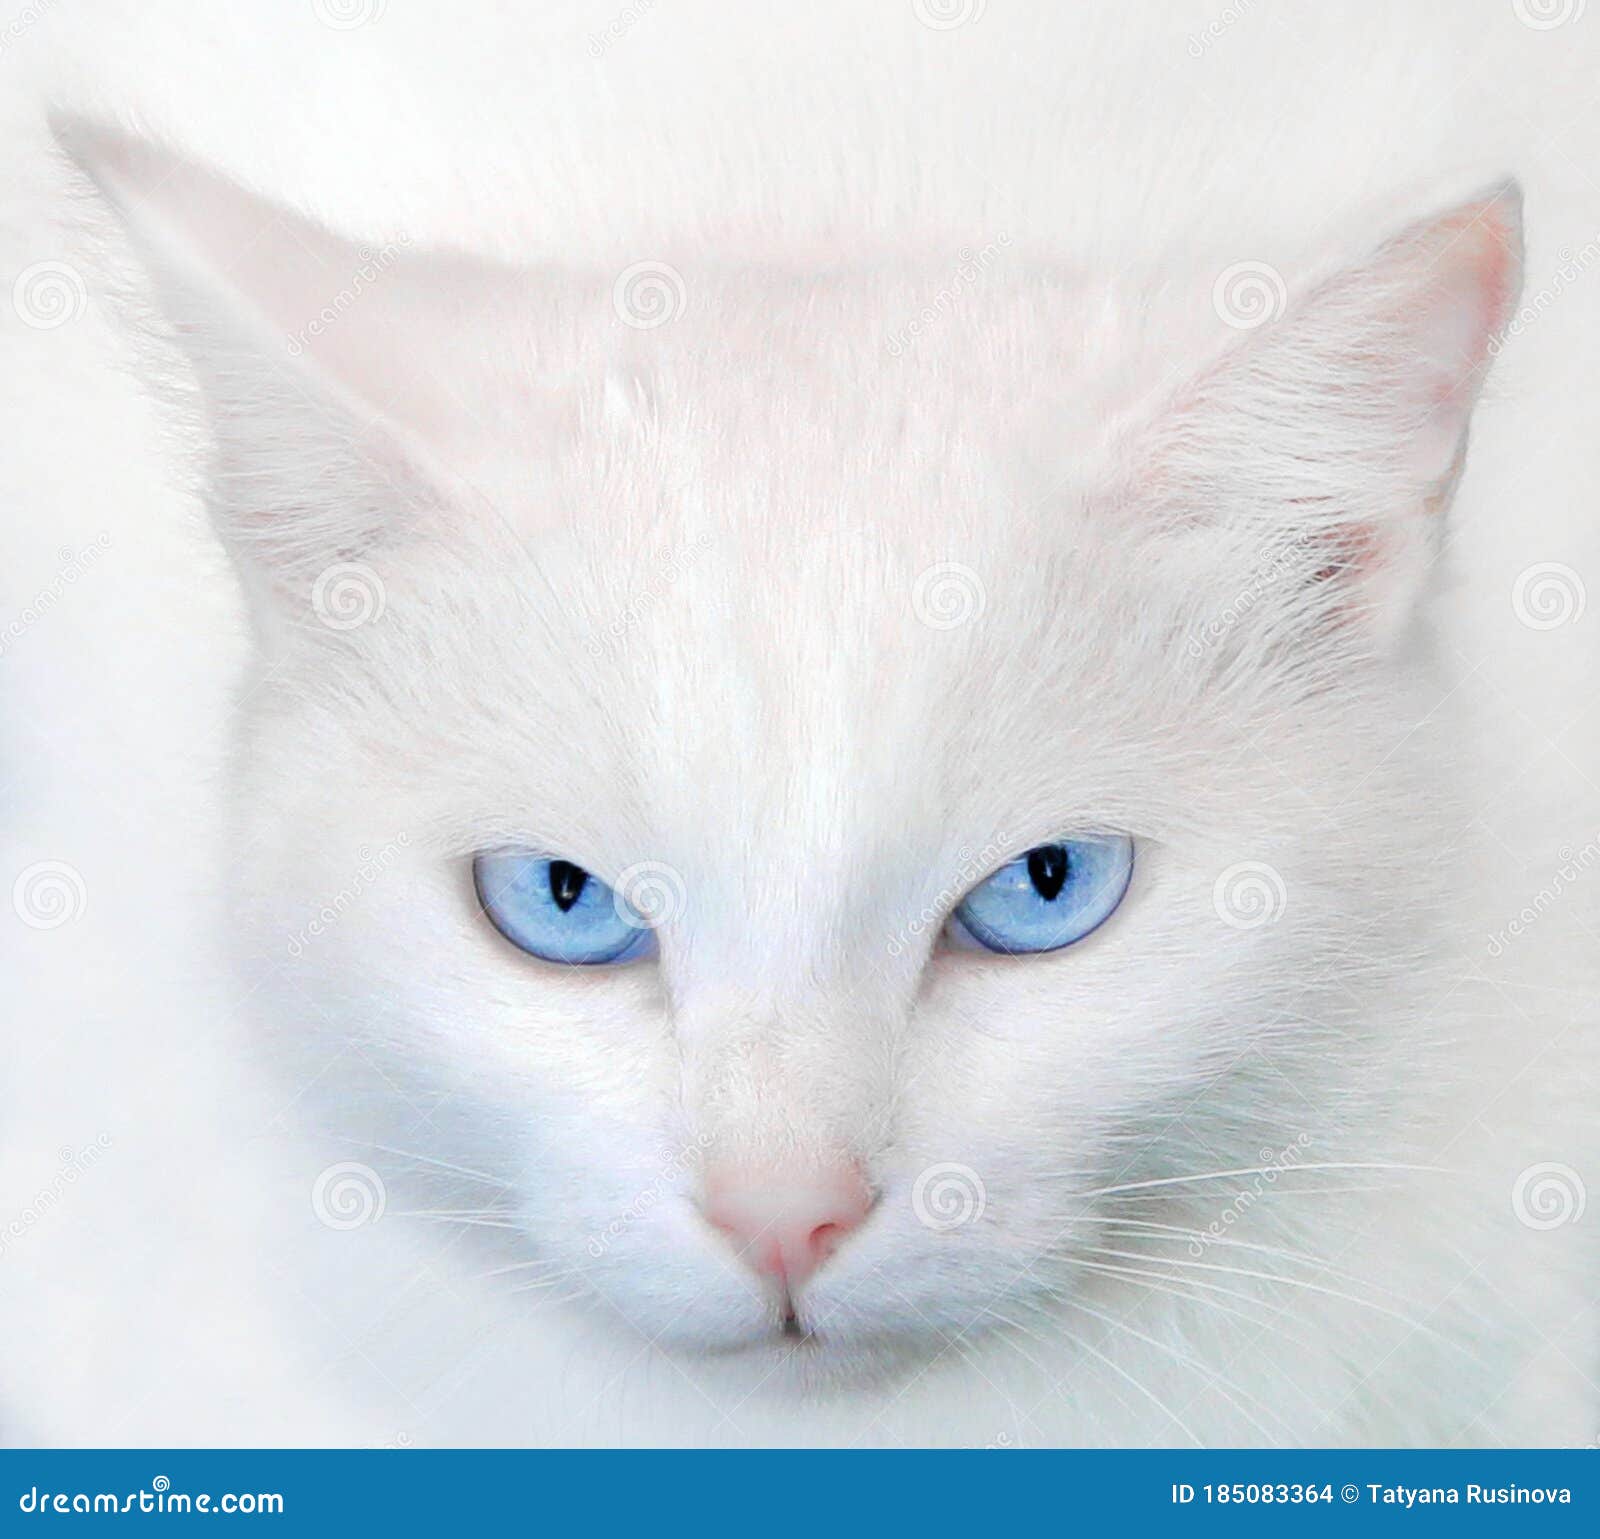 白猫,蓝眼睛,耳朵,胡须,可爱动物壁纸2560x1440高清大图_彼岸桌面